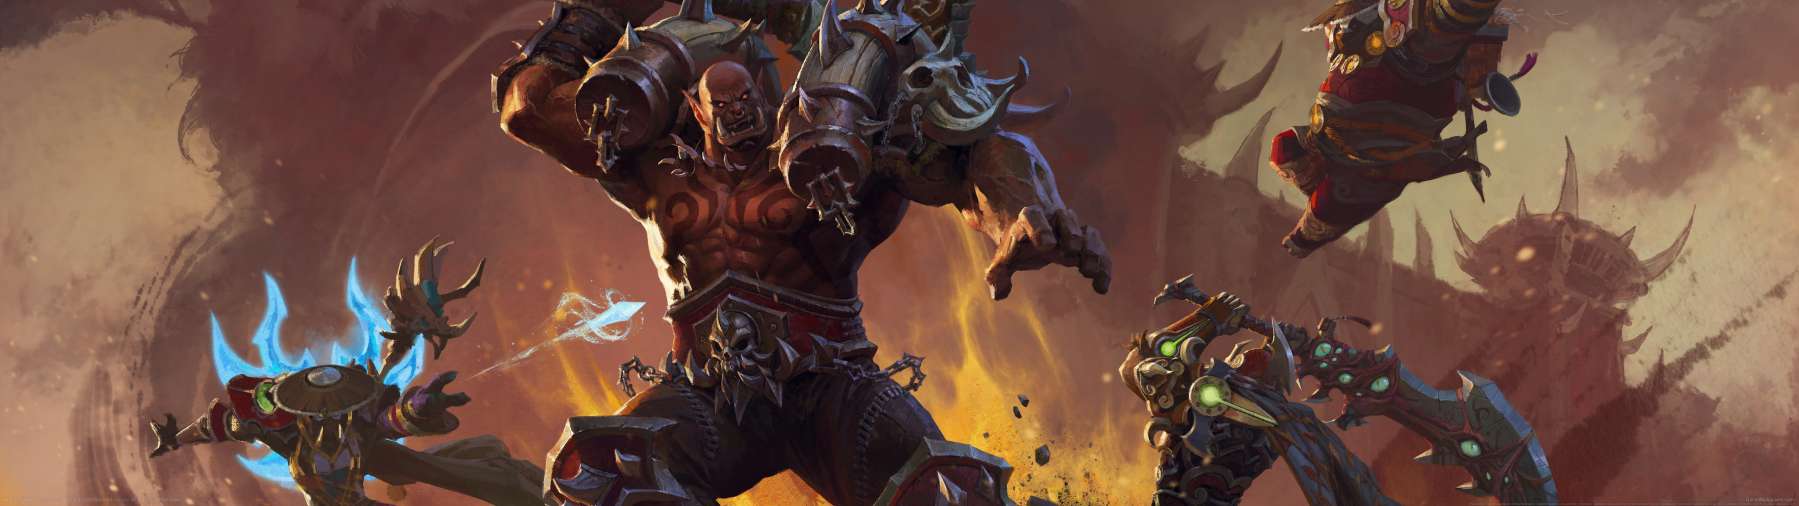 World of Warcraft superwide achtergrond 19